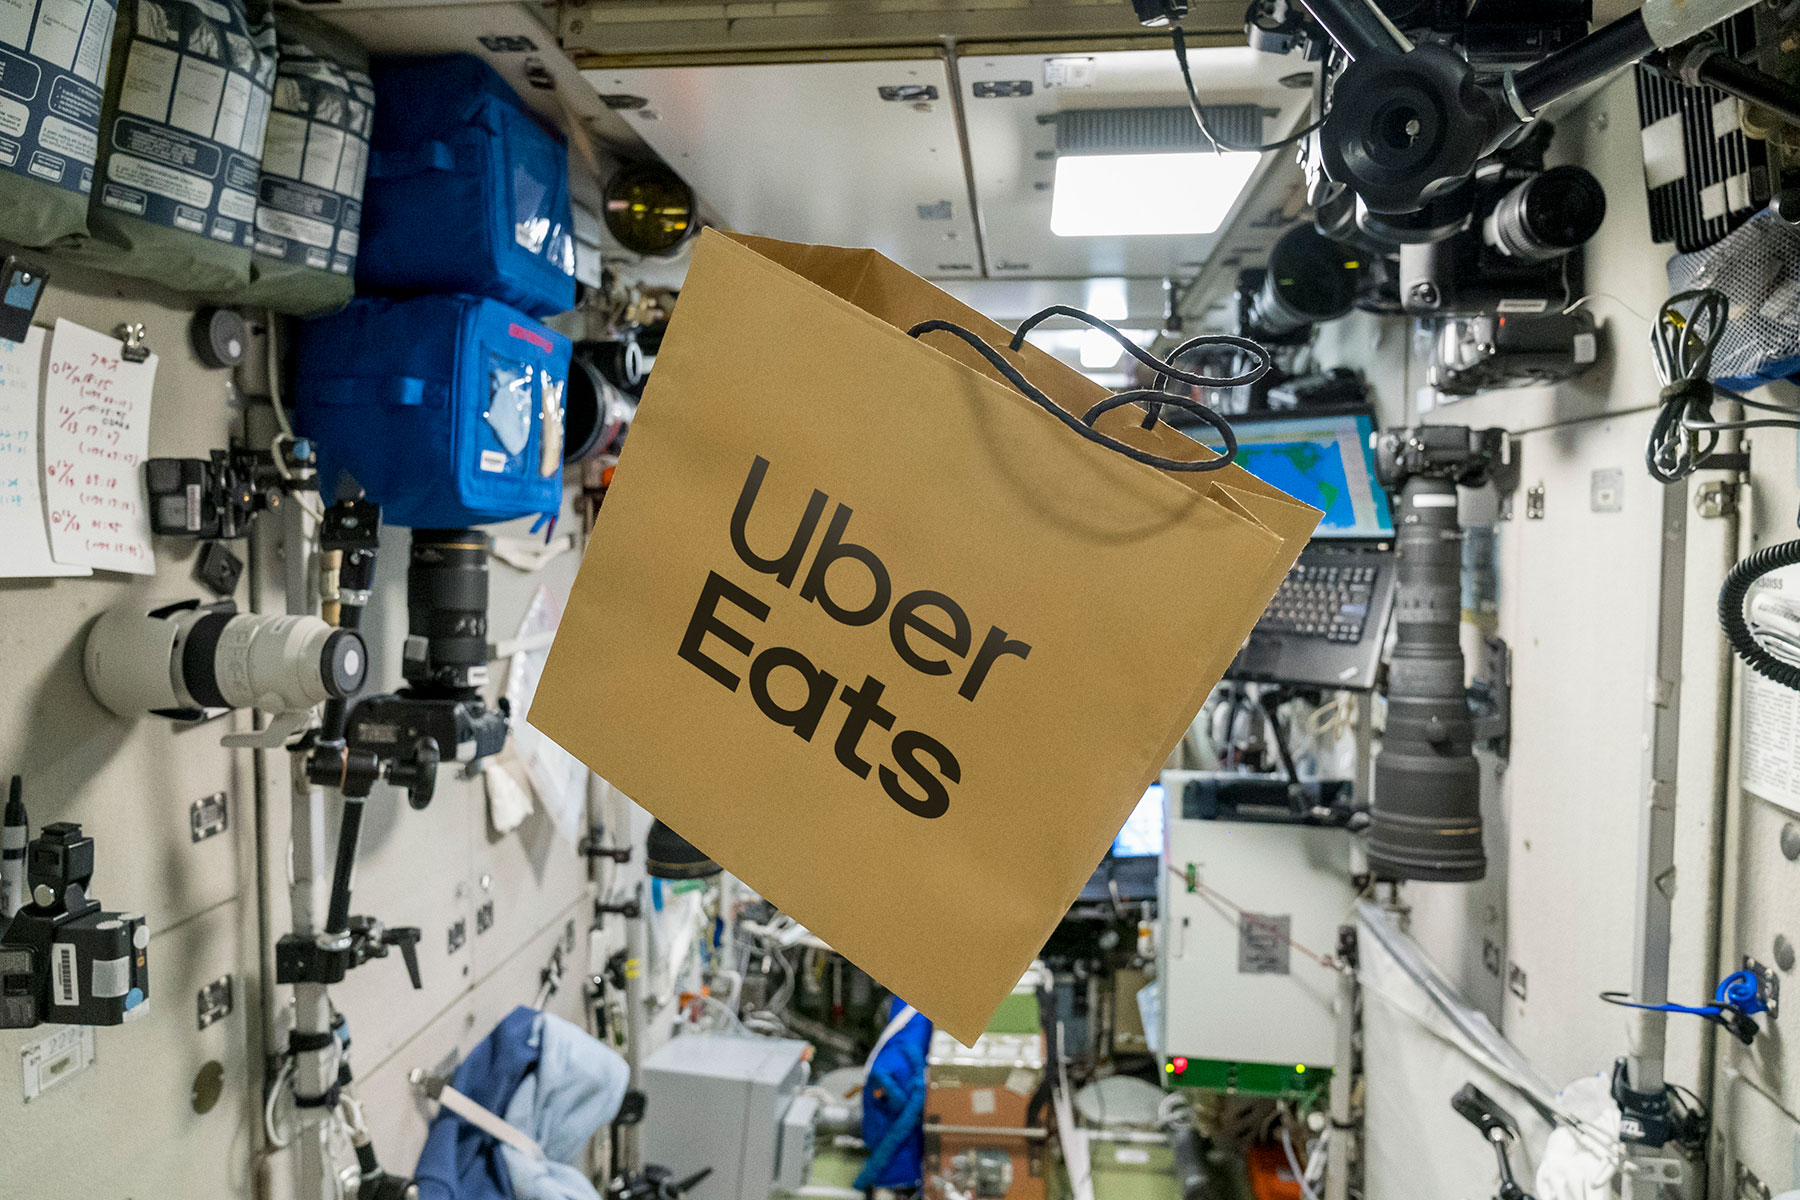 یوساکو مائزاوا، میلیاردر ژاپنی به اولین پیک موتوری Uber Eats تبدیل شد که تحویل غذا در فضا و برای فضانوردان را تجربه می کند